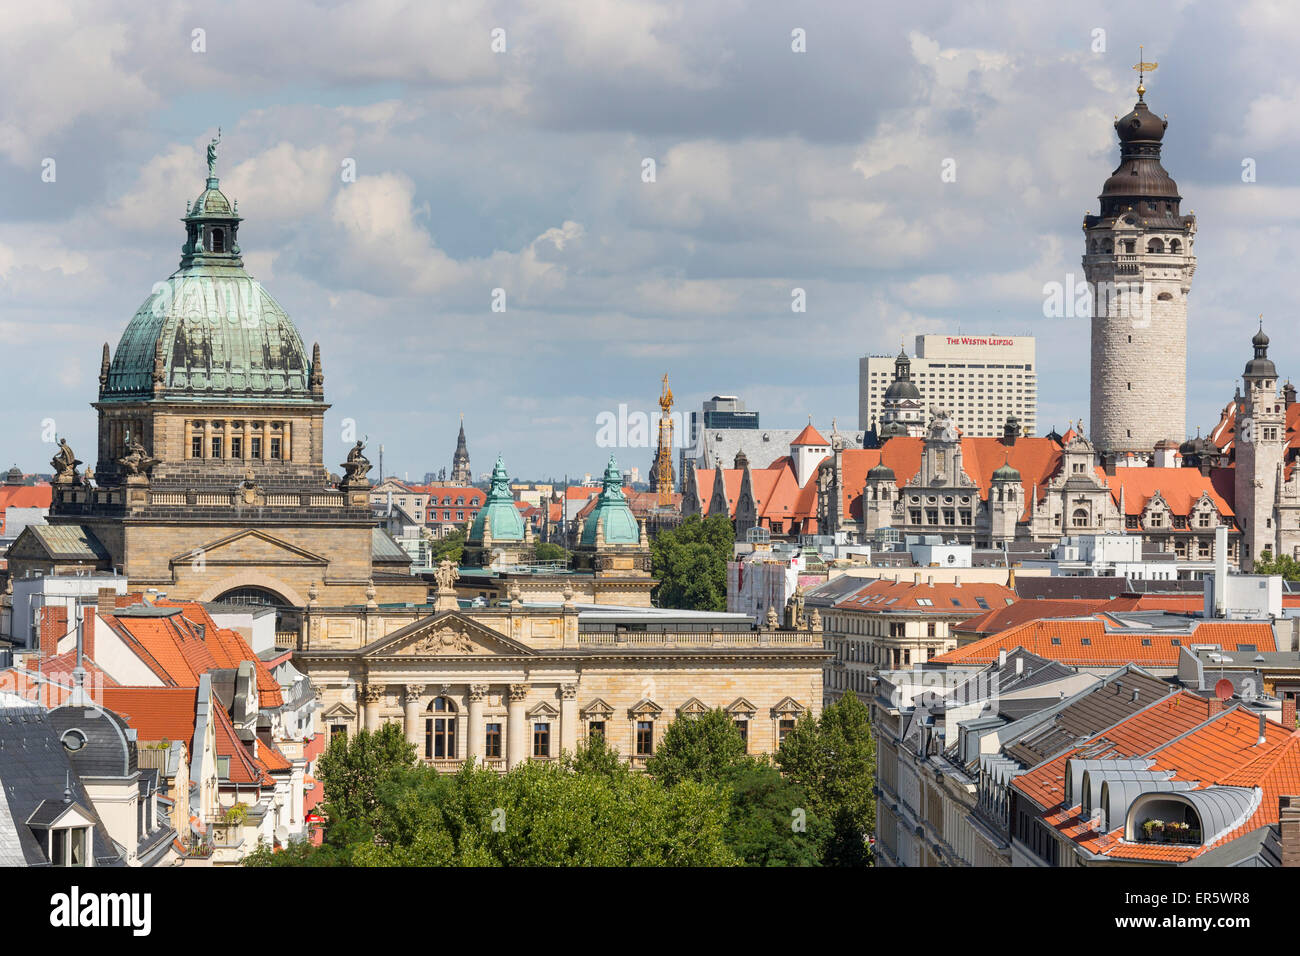 Stadtbild mit Bundesverwaltungsgericht und neues Rathaus, Leipzig, Sachsen, Deutschland Stockfoto